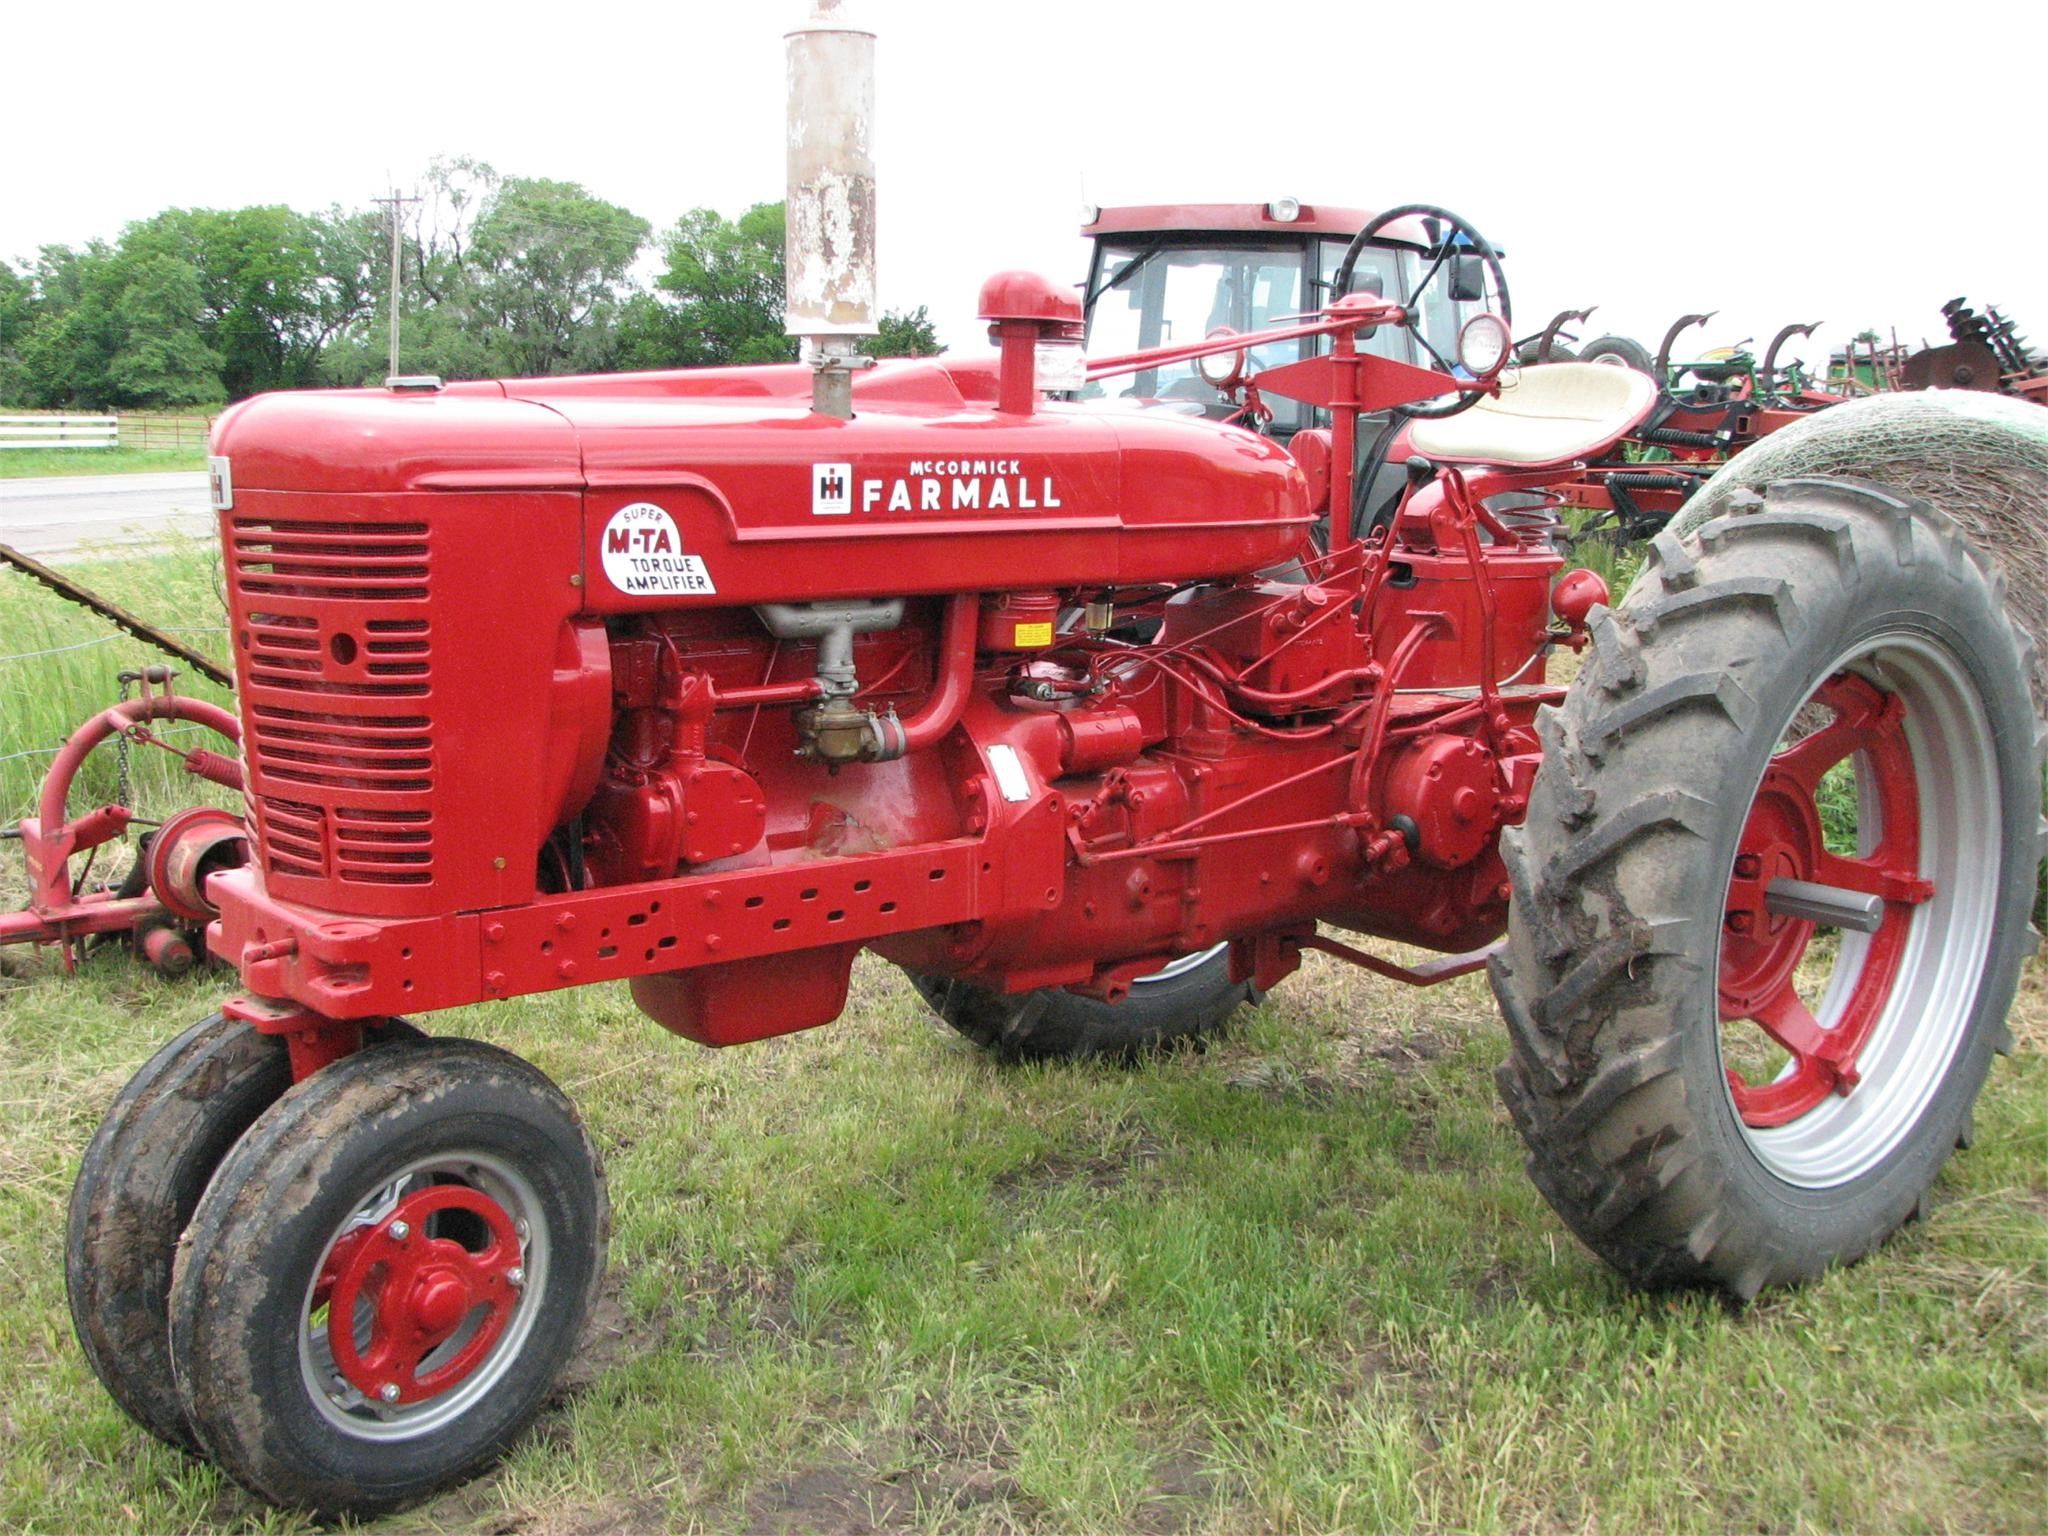 Farmall Super M TA Tractor, Nebraska. $950